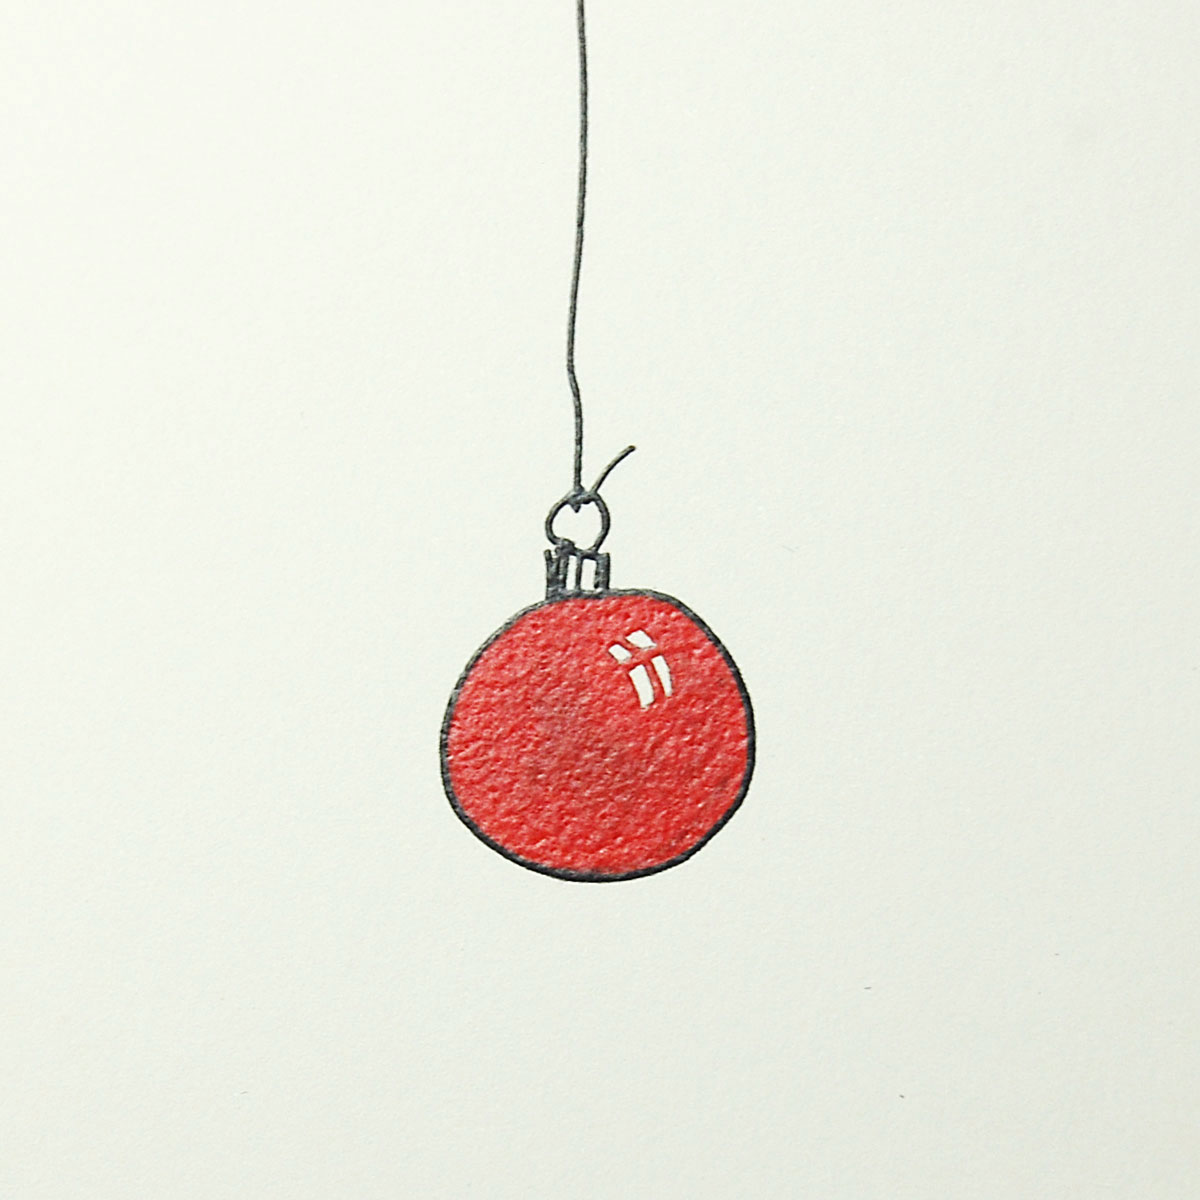 puristische Weihnachtskarten mit einer kleinen roten Weihnachtsbaumkugel, Pantone 186